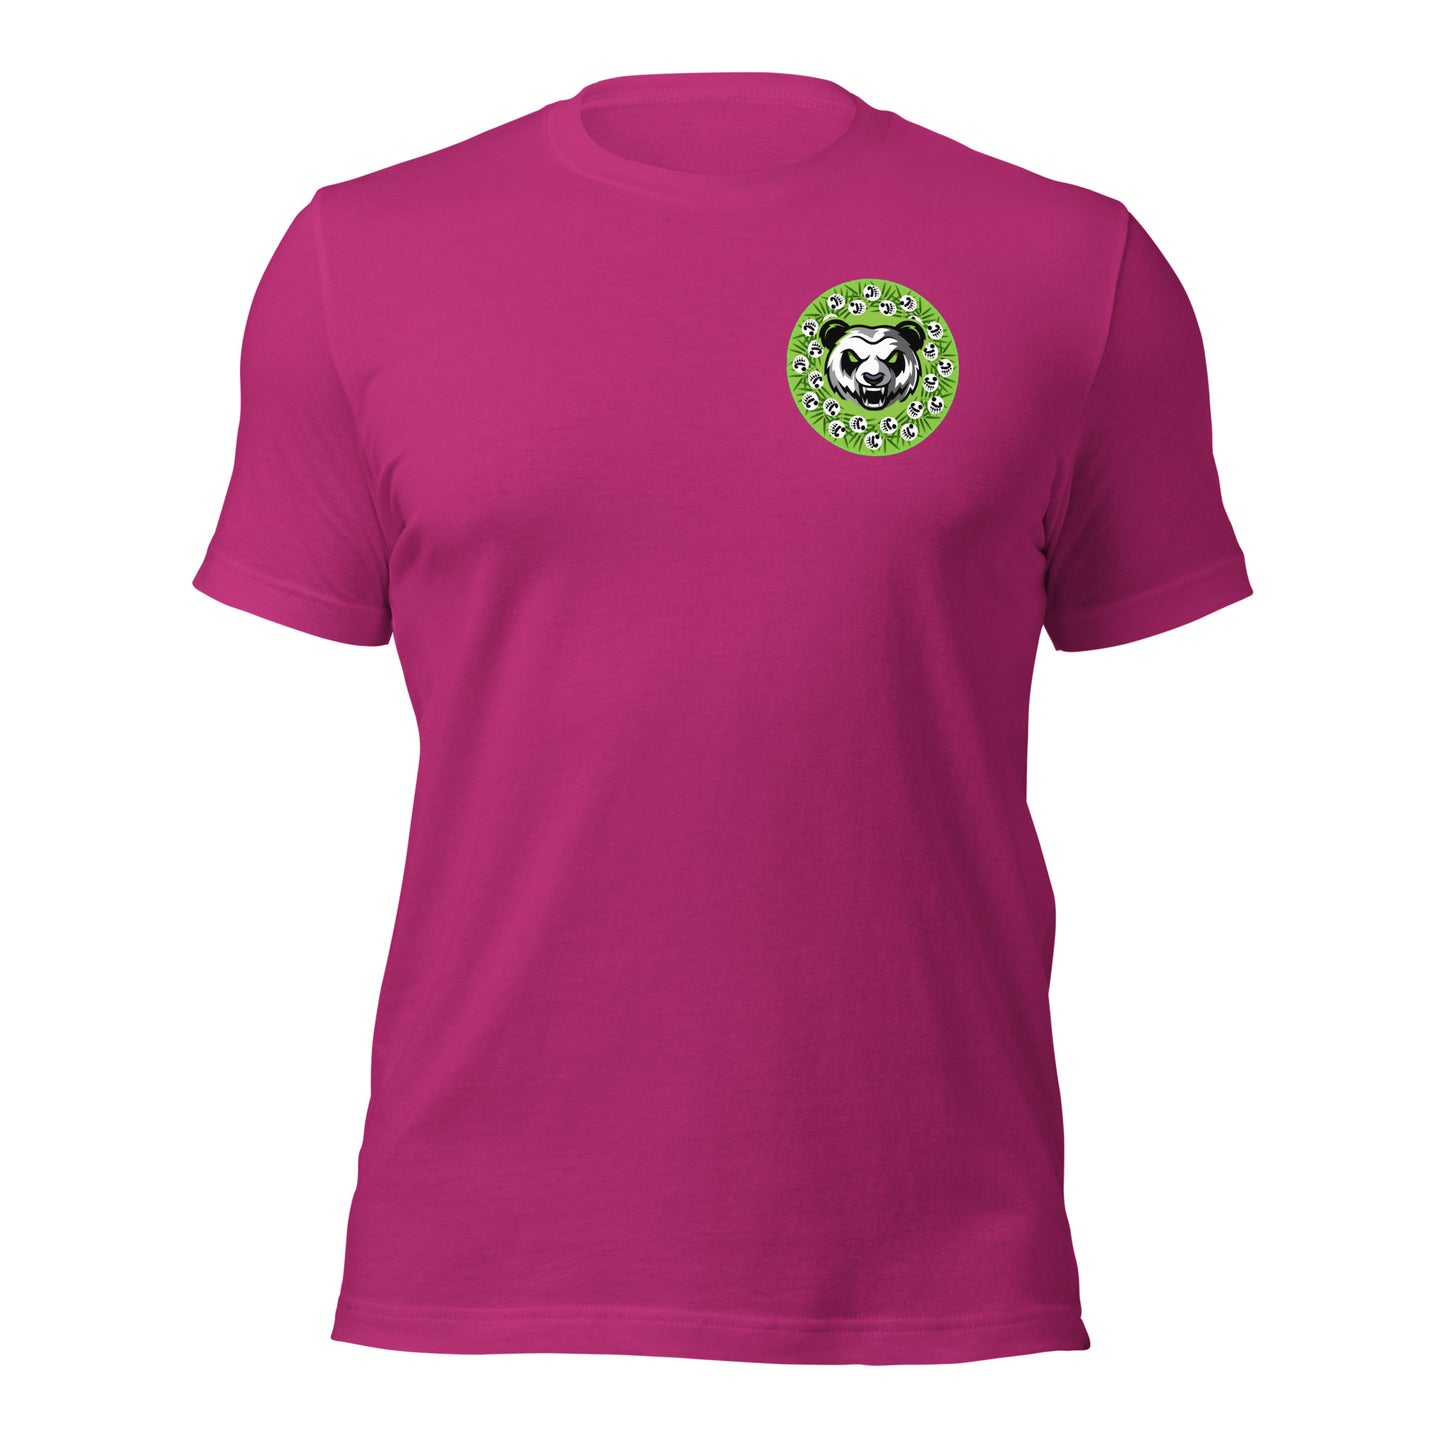 PandaPwr Sfu Unisex t-shirt